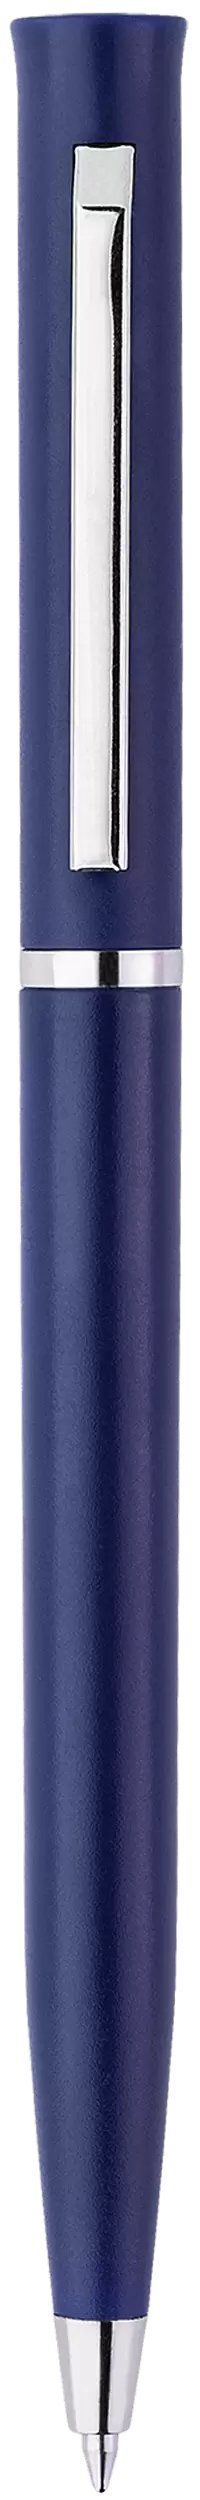 Ручка EUROPA Темно-синяя 2023.14